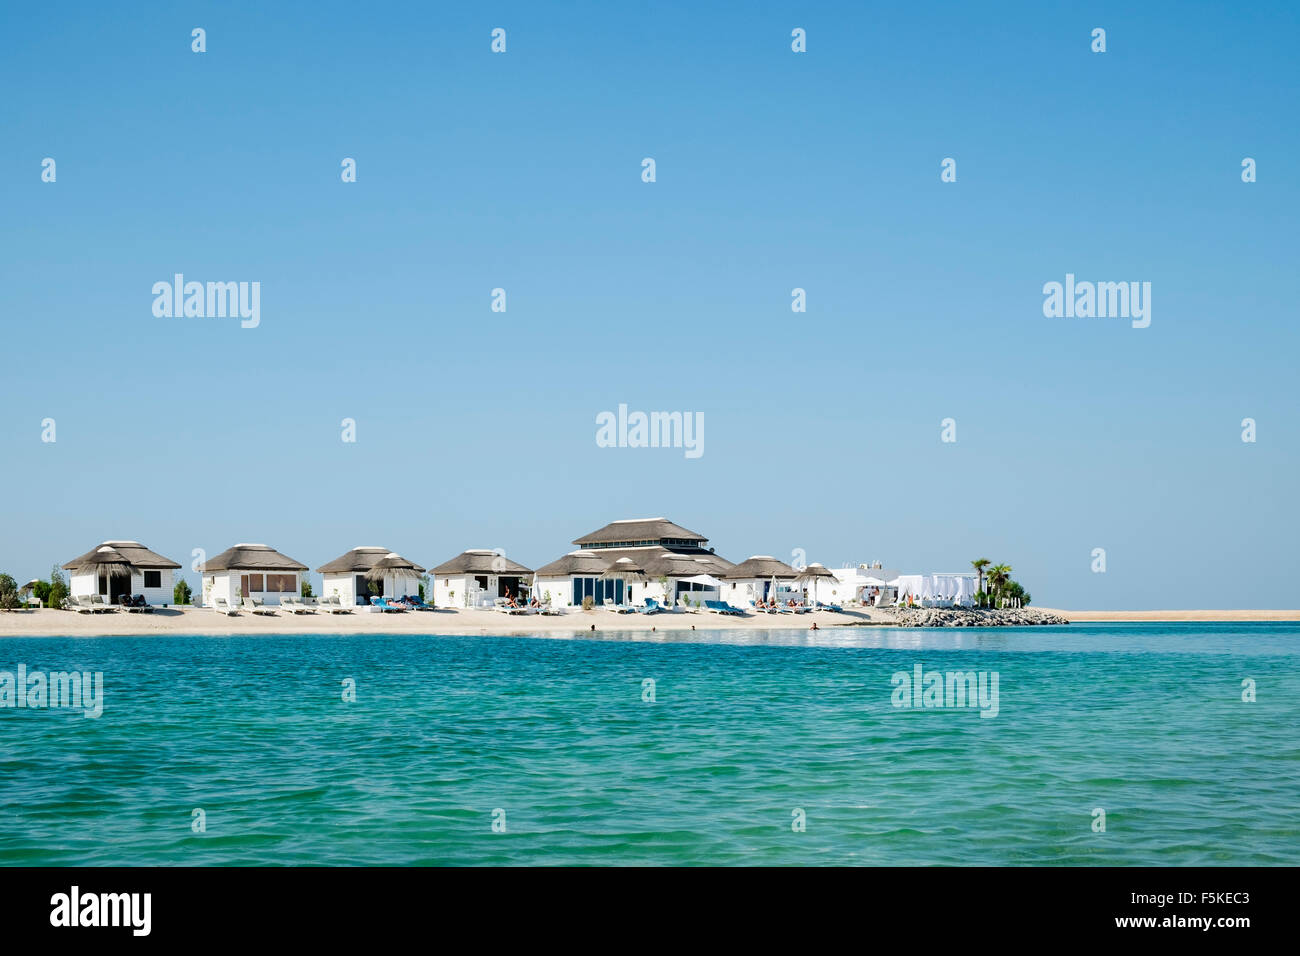 Blick auf die Insel Libanon Strandresort auf einen Mann machte Insel, Teil von The World Dubai Küste in Vereinigte Arabische Emirate Stockfoto